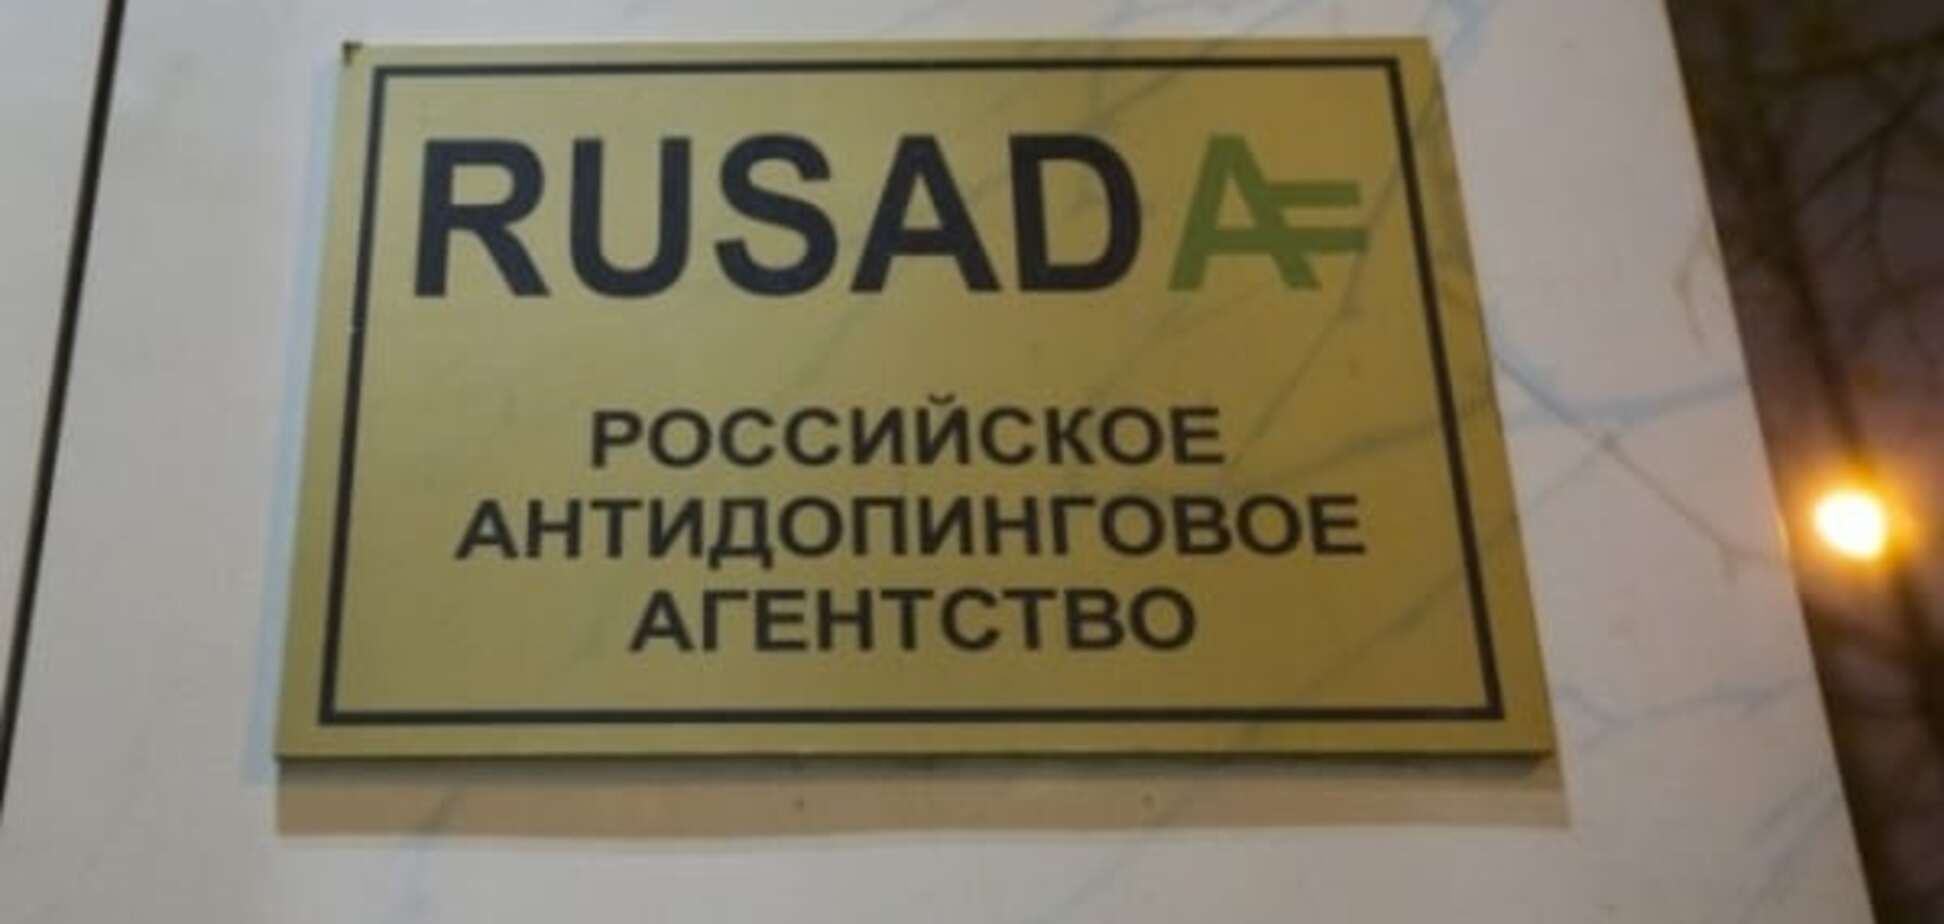 Антидопінгове агентство Росії офіційно визнано незаконним. Україна під підозрою